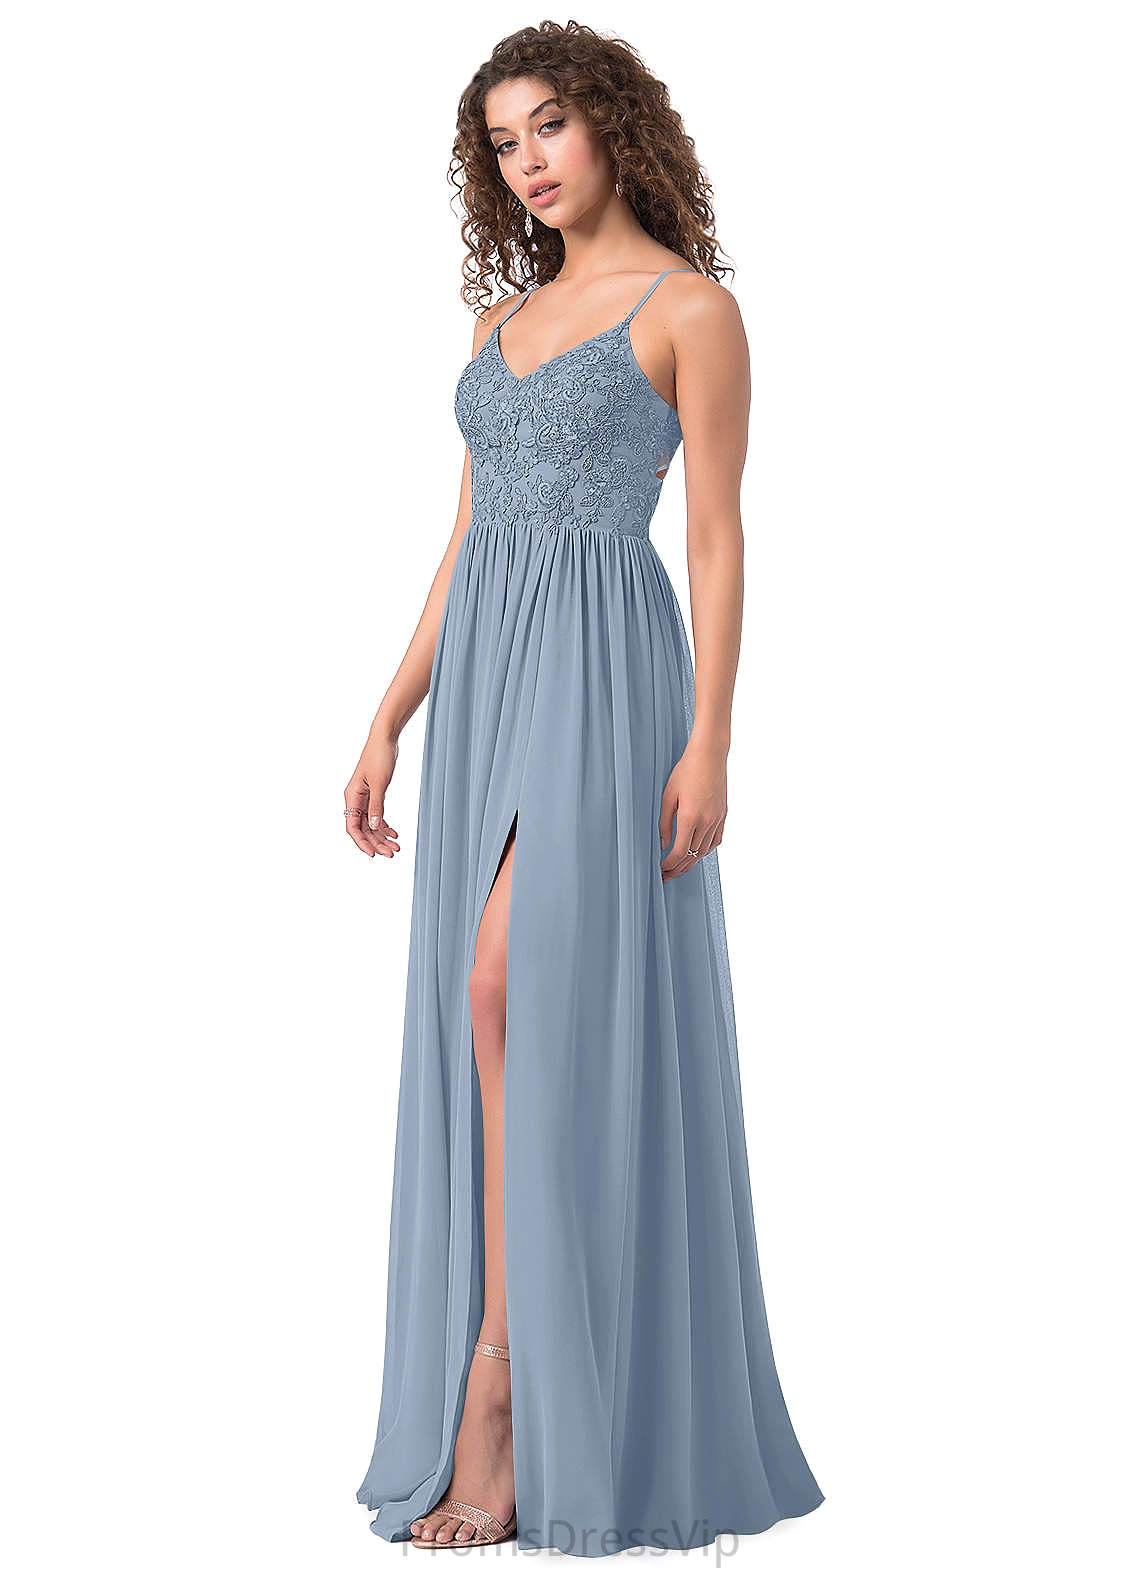 Tessa Natural Waist Floor Length Sleeveless Trumpet/Mermaid Bridesmaid Dresses